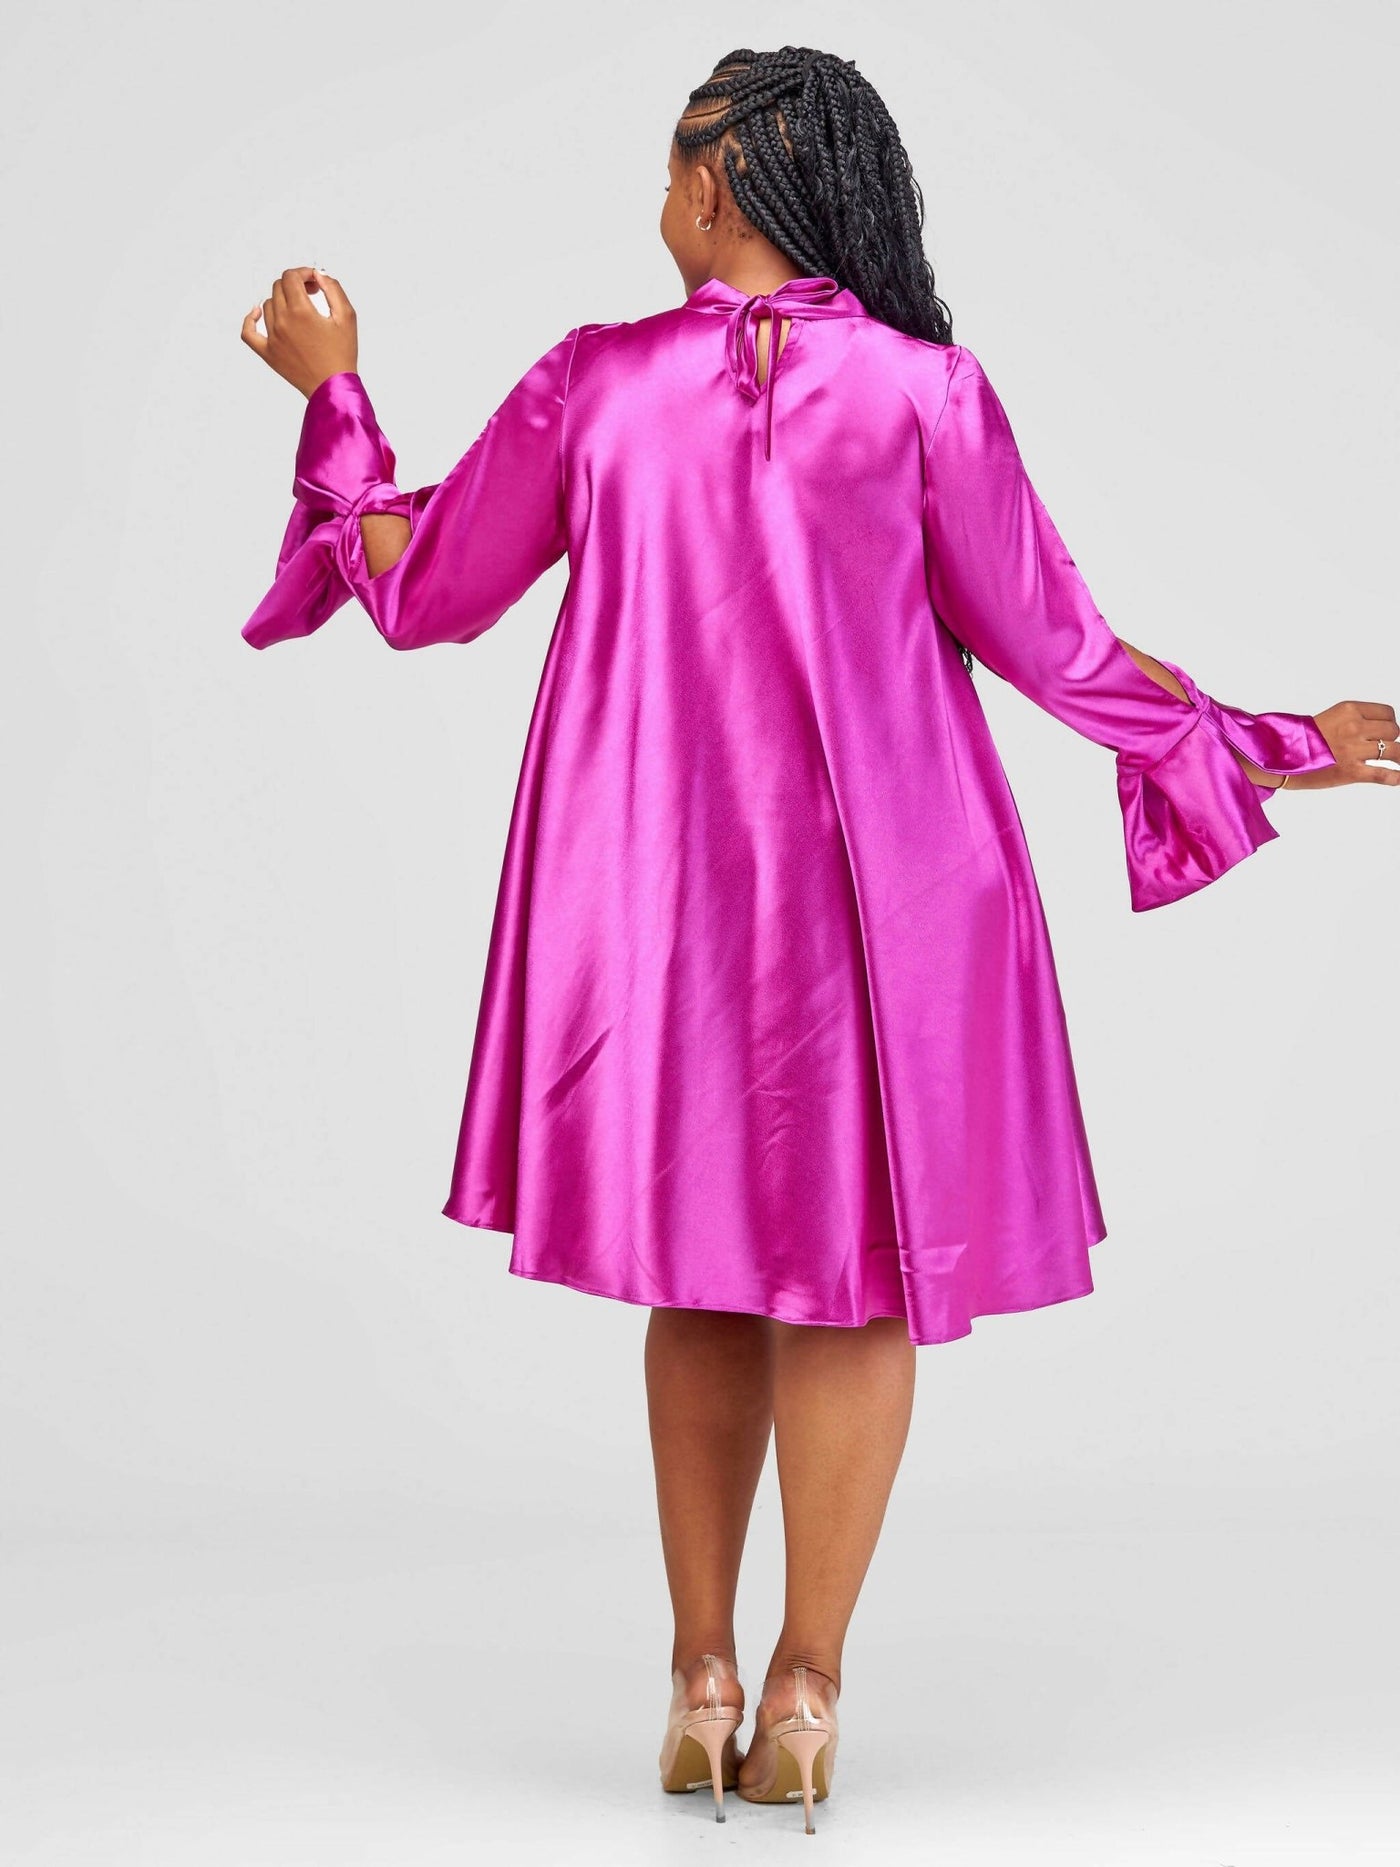 Jolly Fancy Wear Silky Shift Dress - Pink - Shopzetu